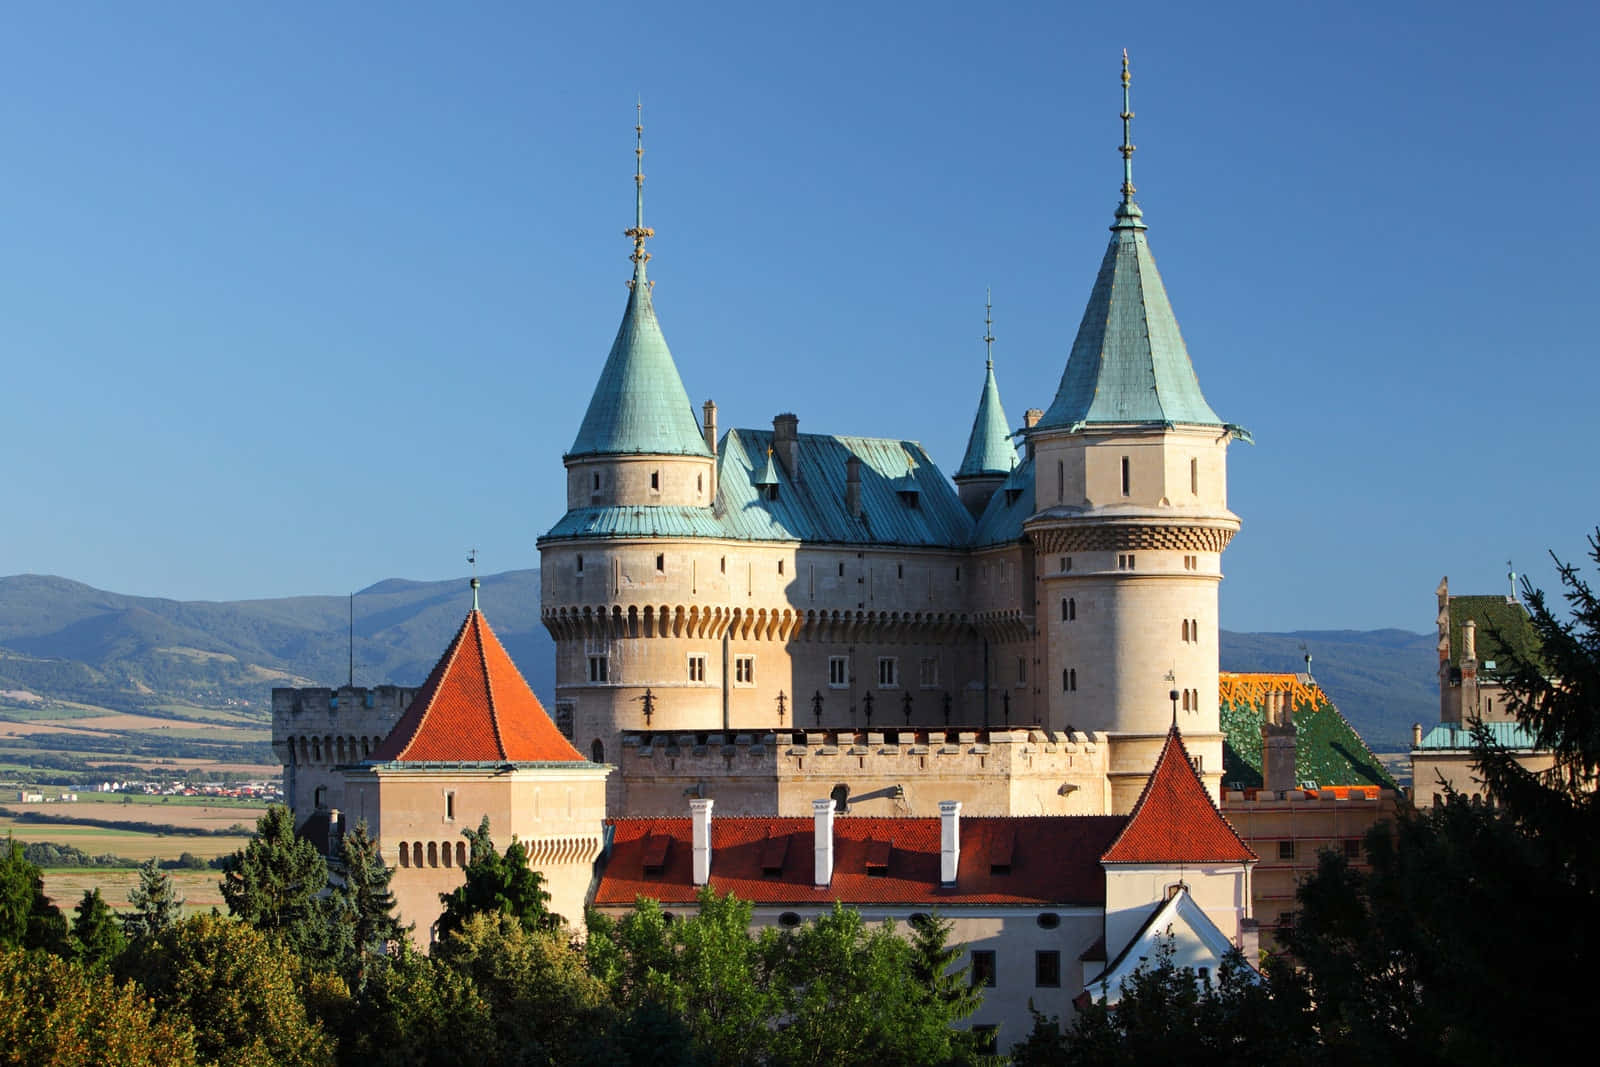 Bojnice Castle Roofs Wallpaper